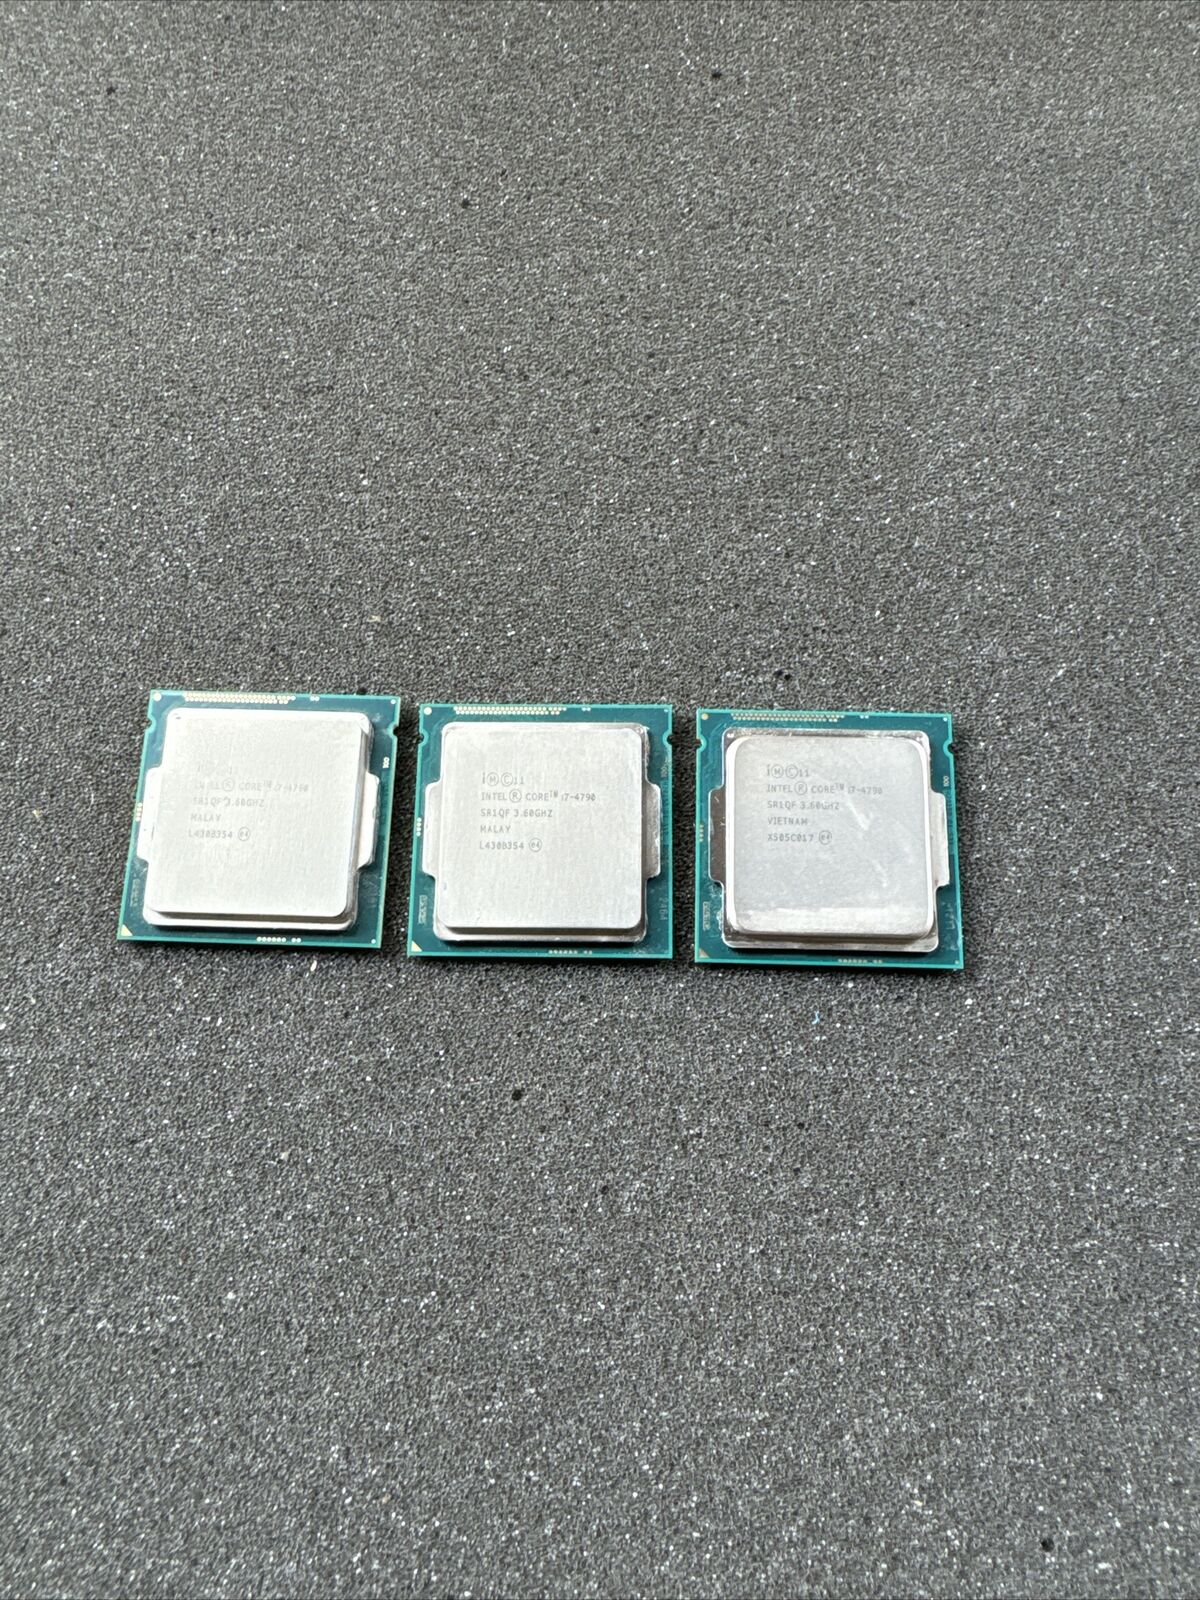 Lot of 3 Intel Core i7-4790 3.60ghz LGA1150 SR1QF Processor